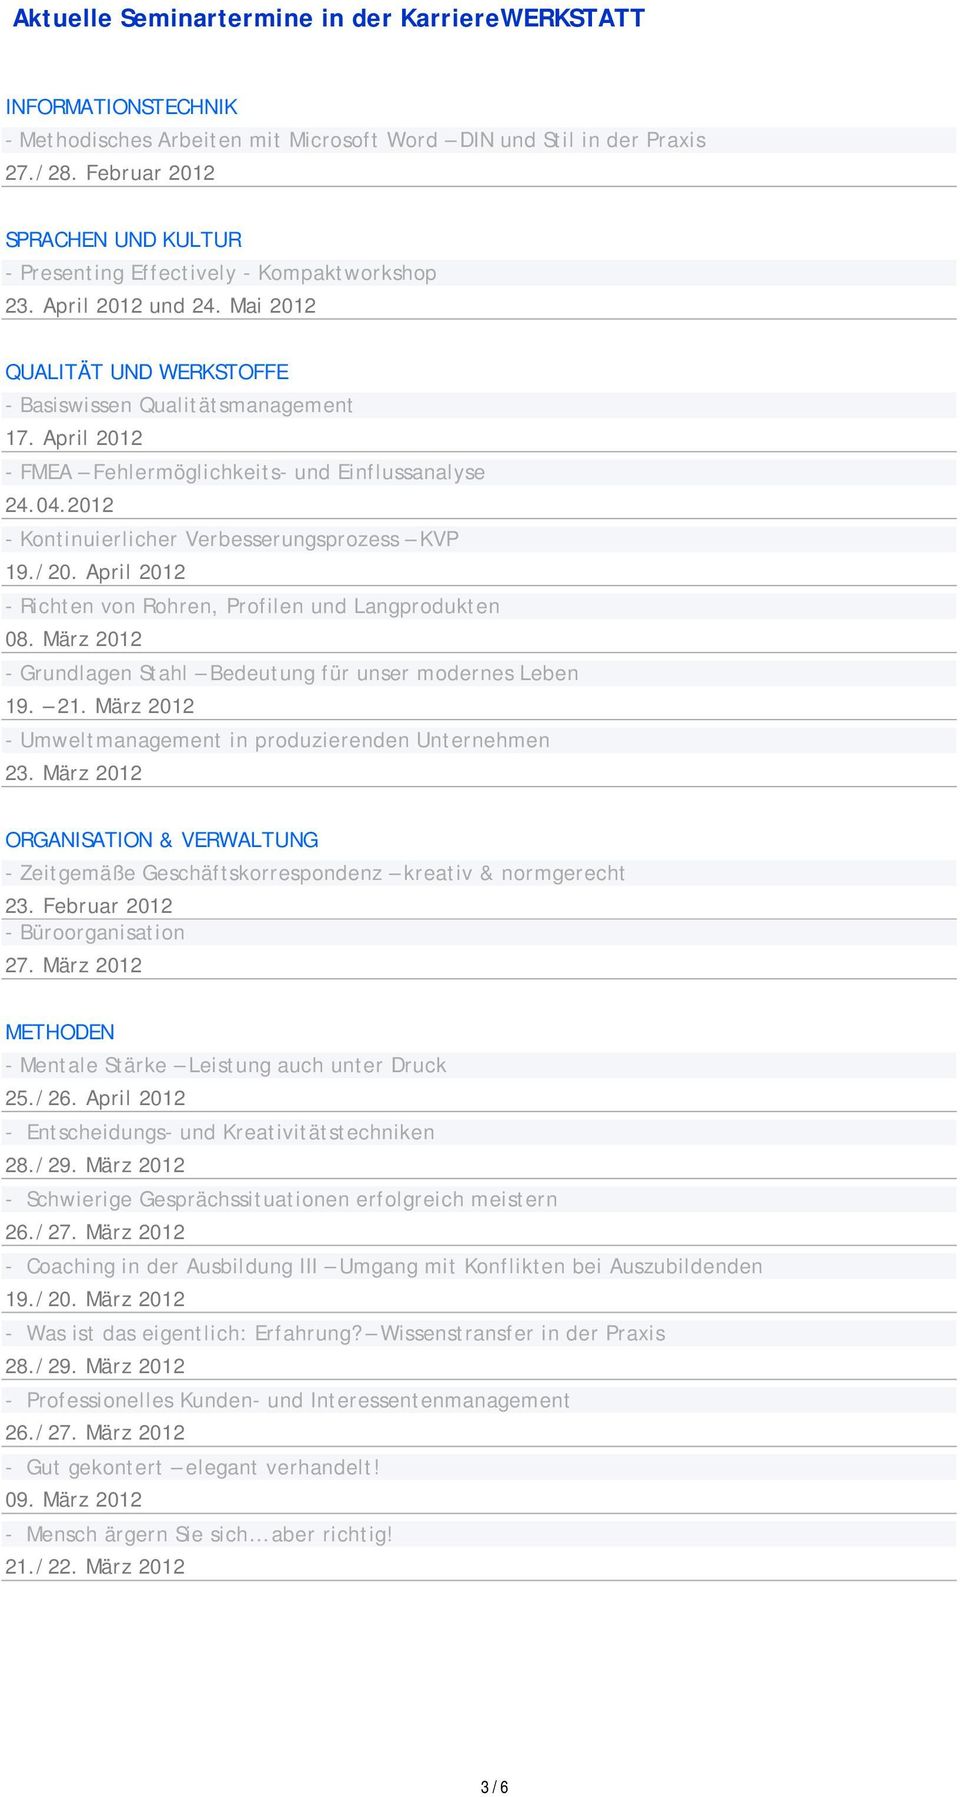 April 2012 - FMEA Fehlermöglichkeits- und Einflussanalyse 24.04.2012 - Kontinuierlicher Verbesserungsprozess KVP 19./20. April 2012 - Richten von Rohren, Profilen und Langprodukten 08.